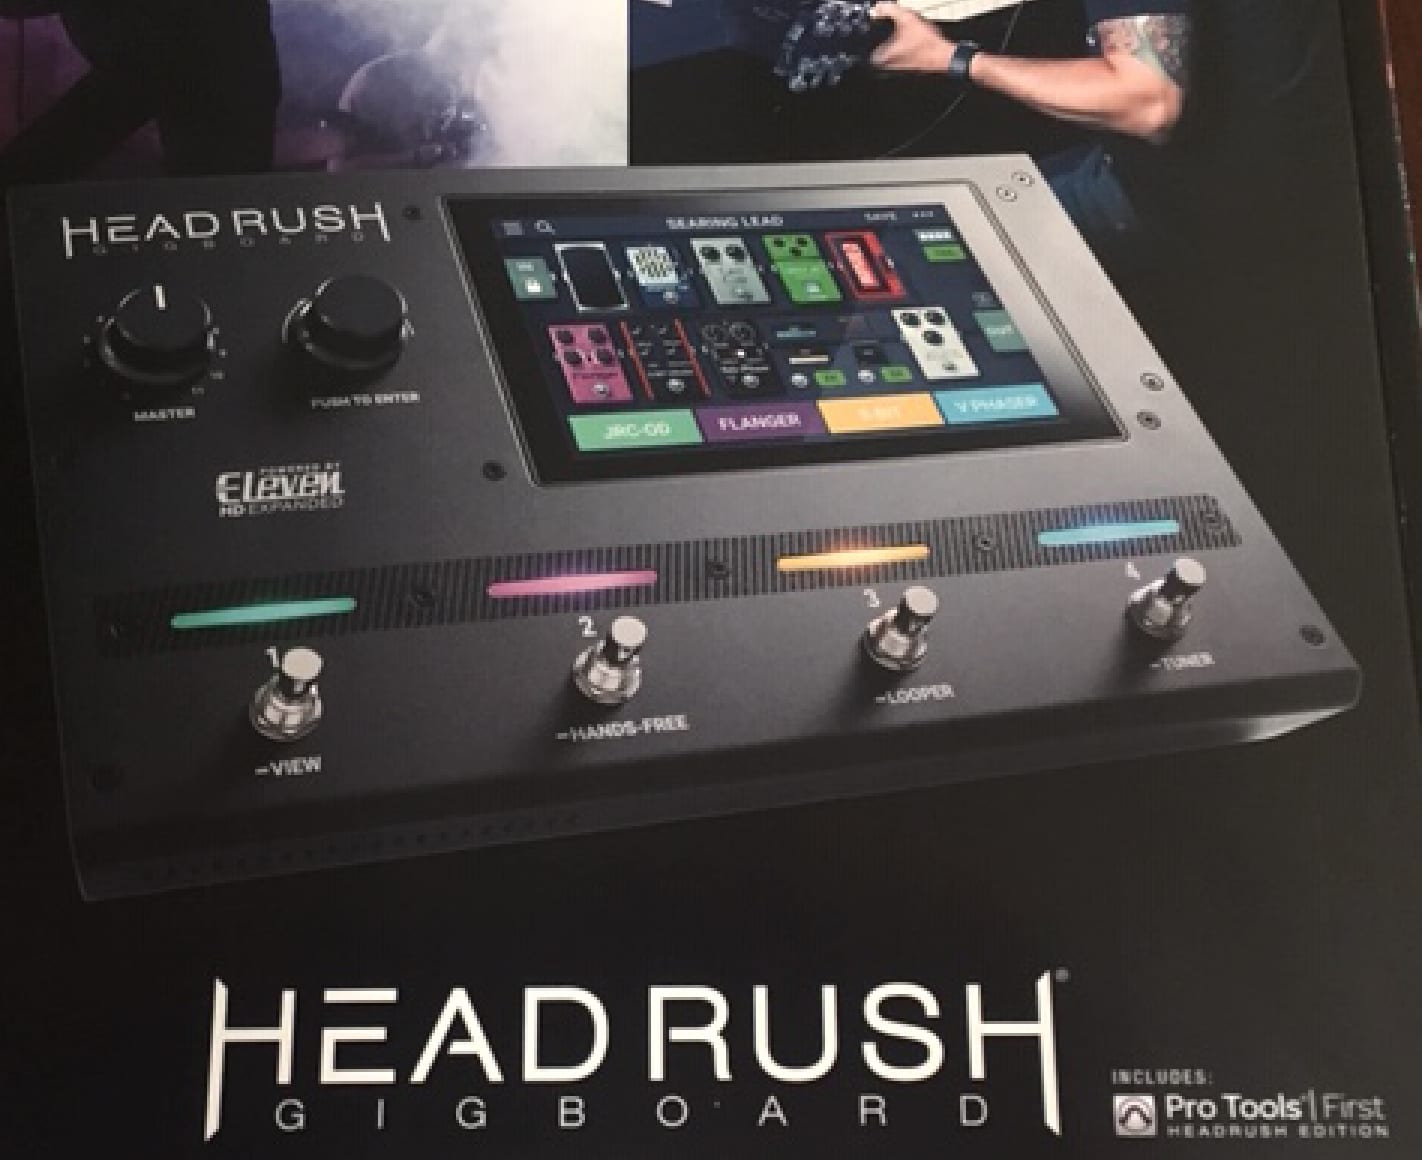 Headrush GigBoard leaked image